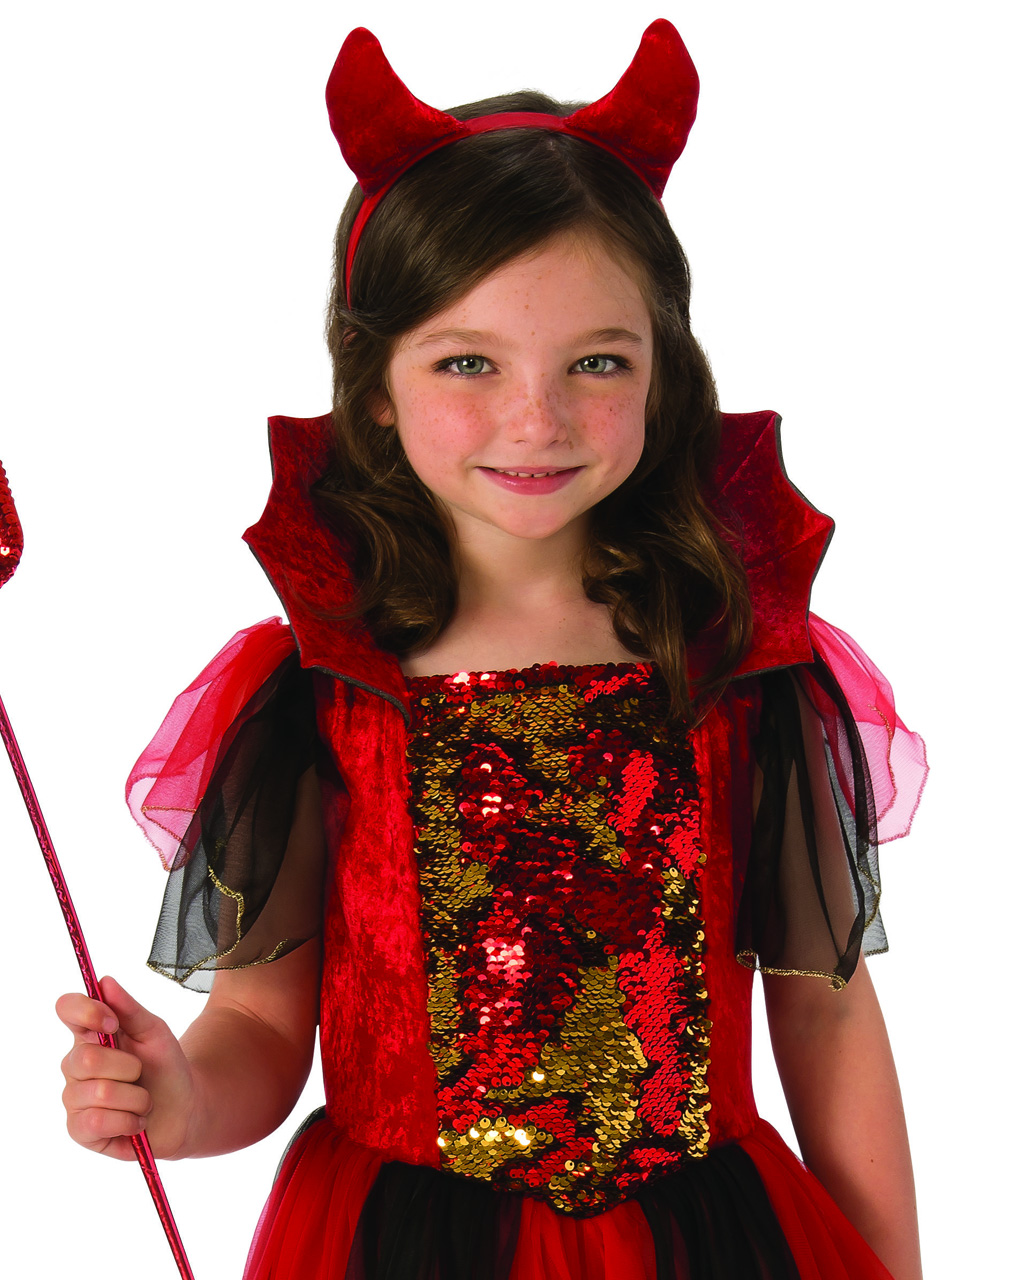 Kids Glow in the Dark Stick Devil Costume Boy Girls Halloween Fancy Dress Outfit 